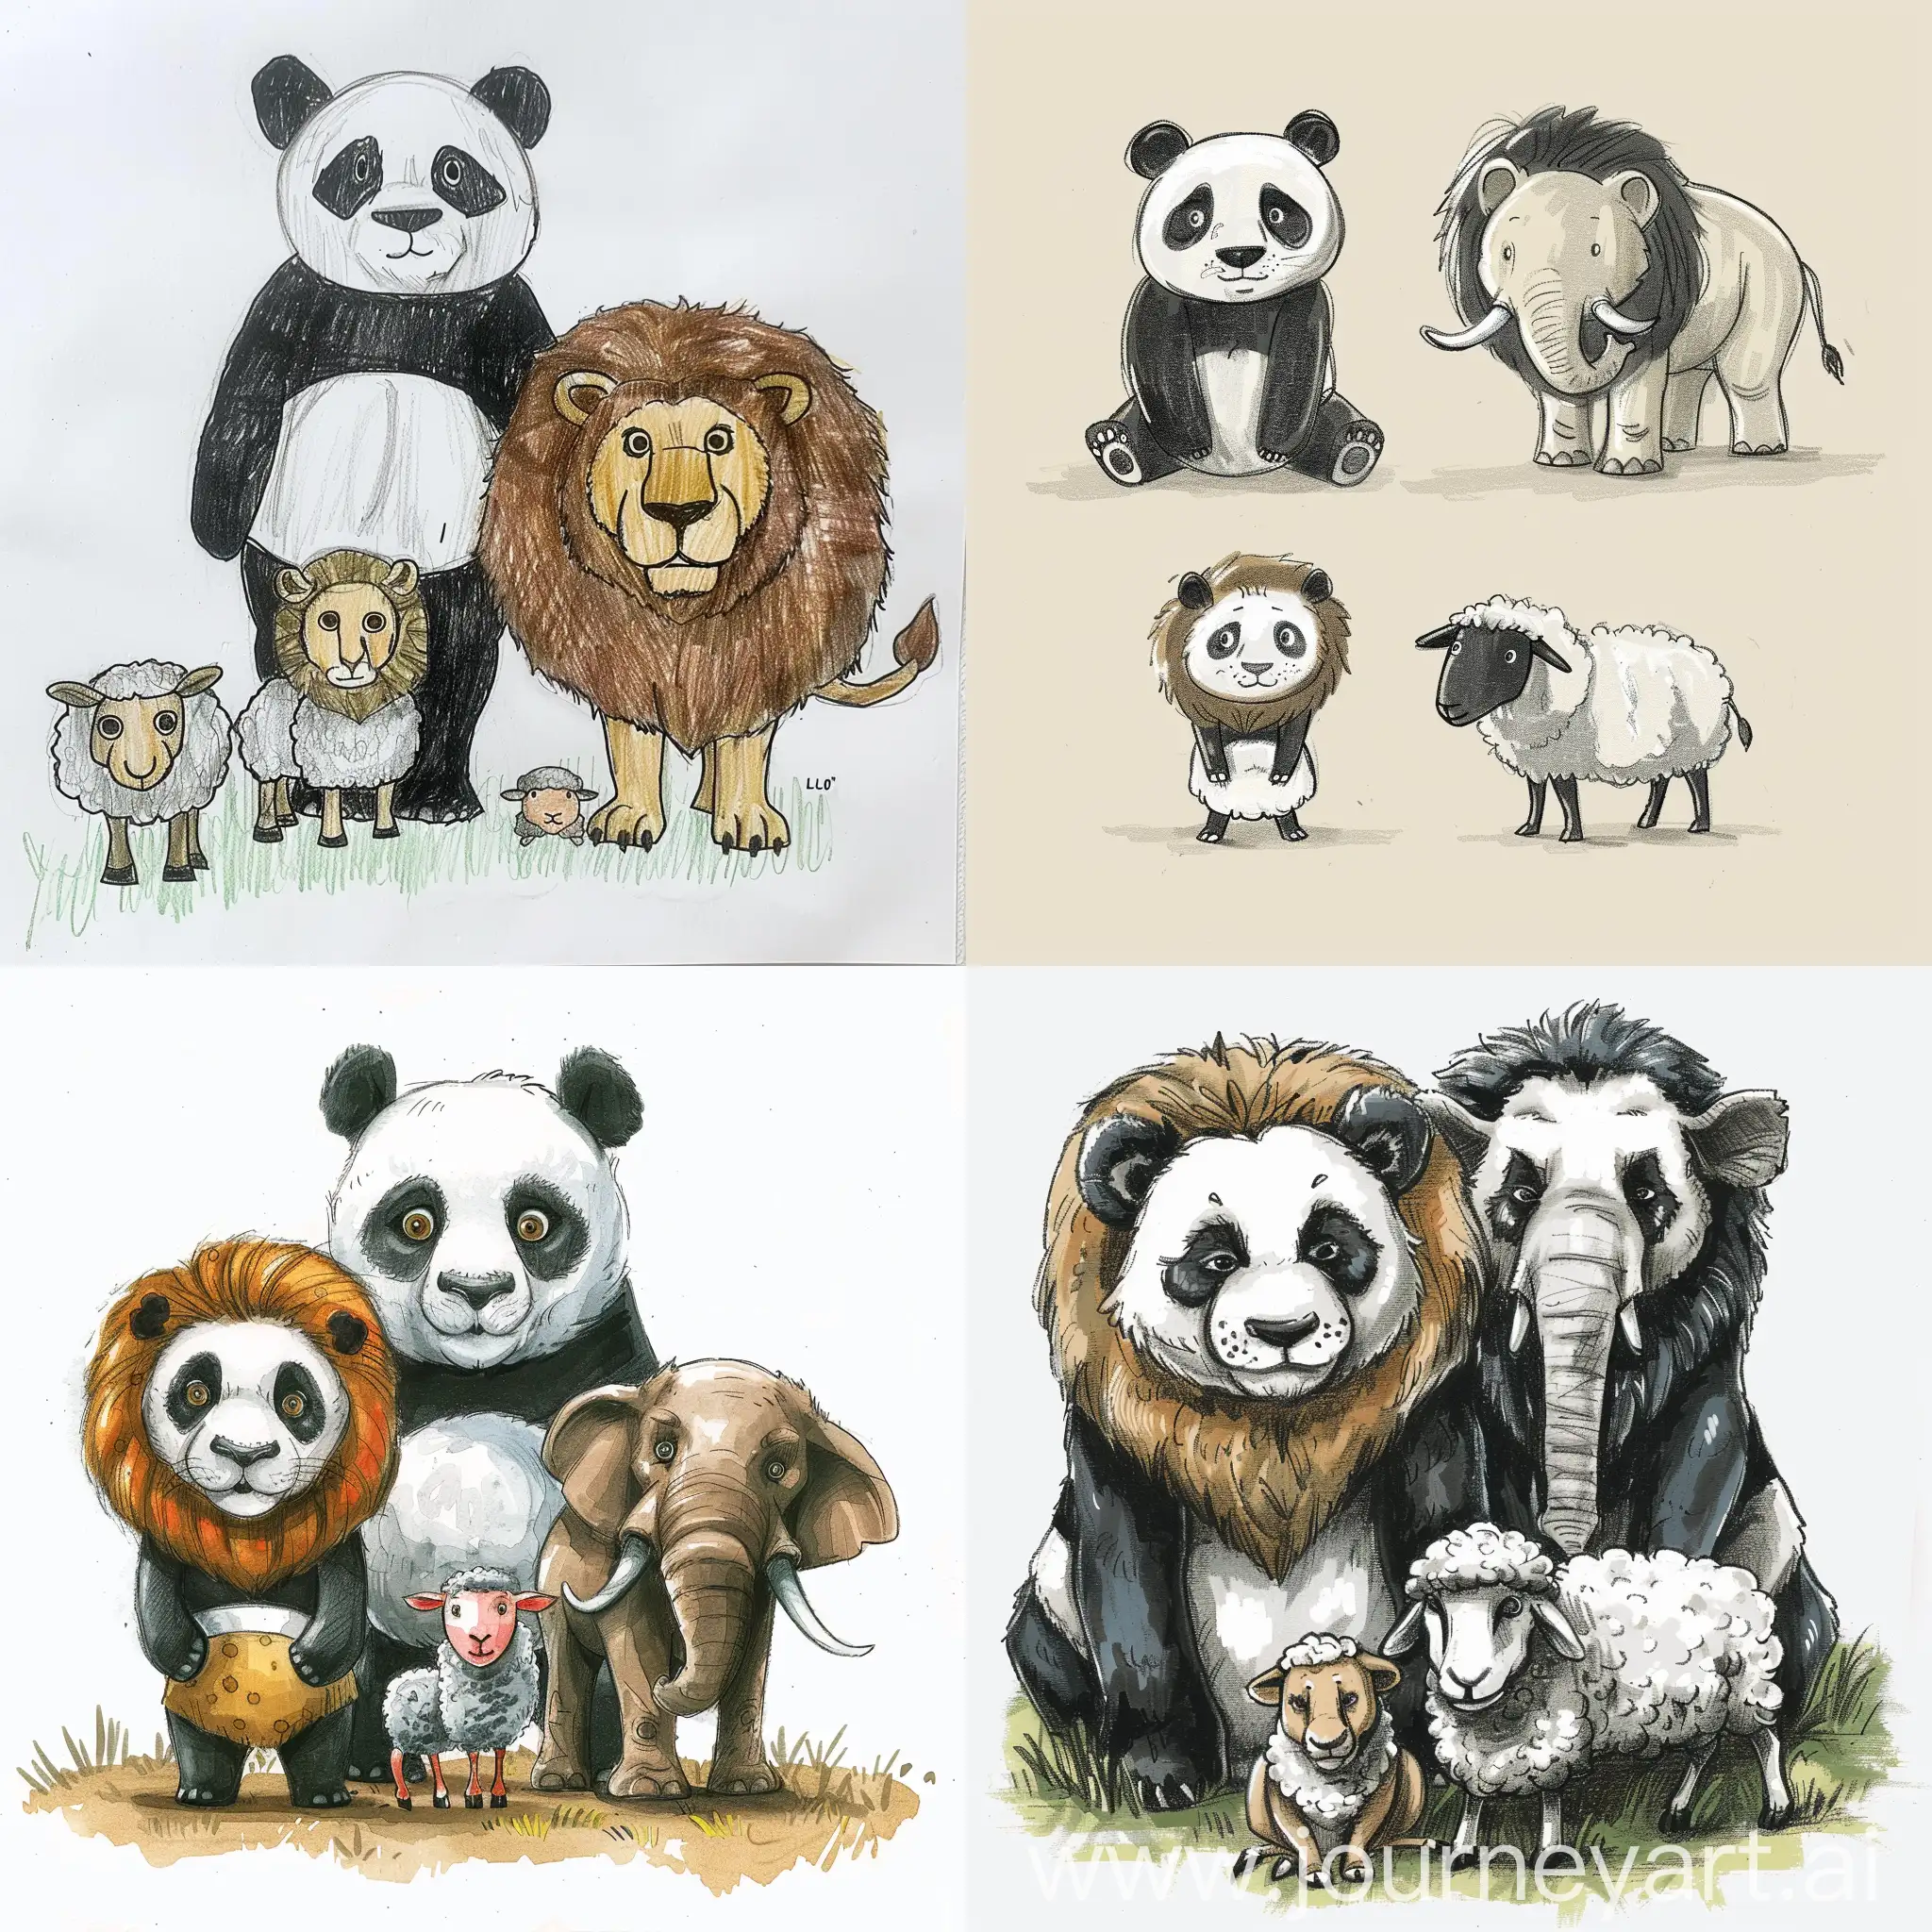 Wildlife-Harmony-Panda-Lion-Elephant-and-Sheep-Gathered-Together